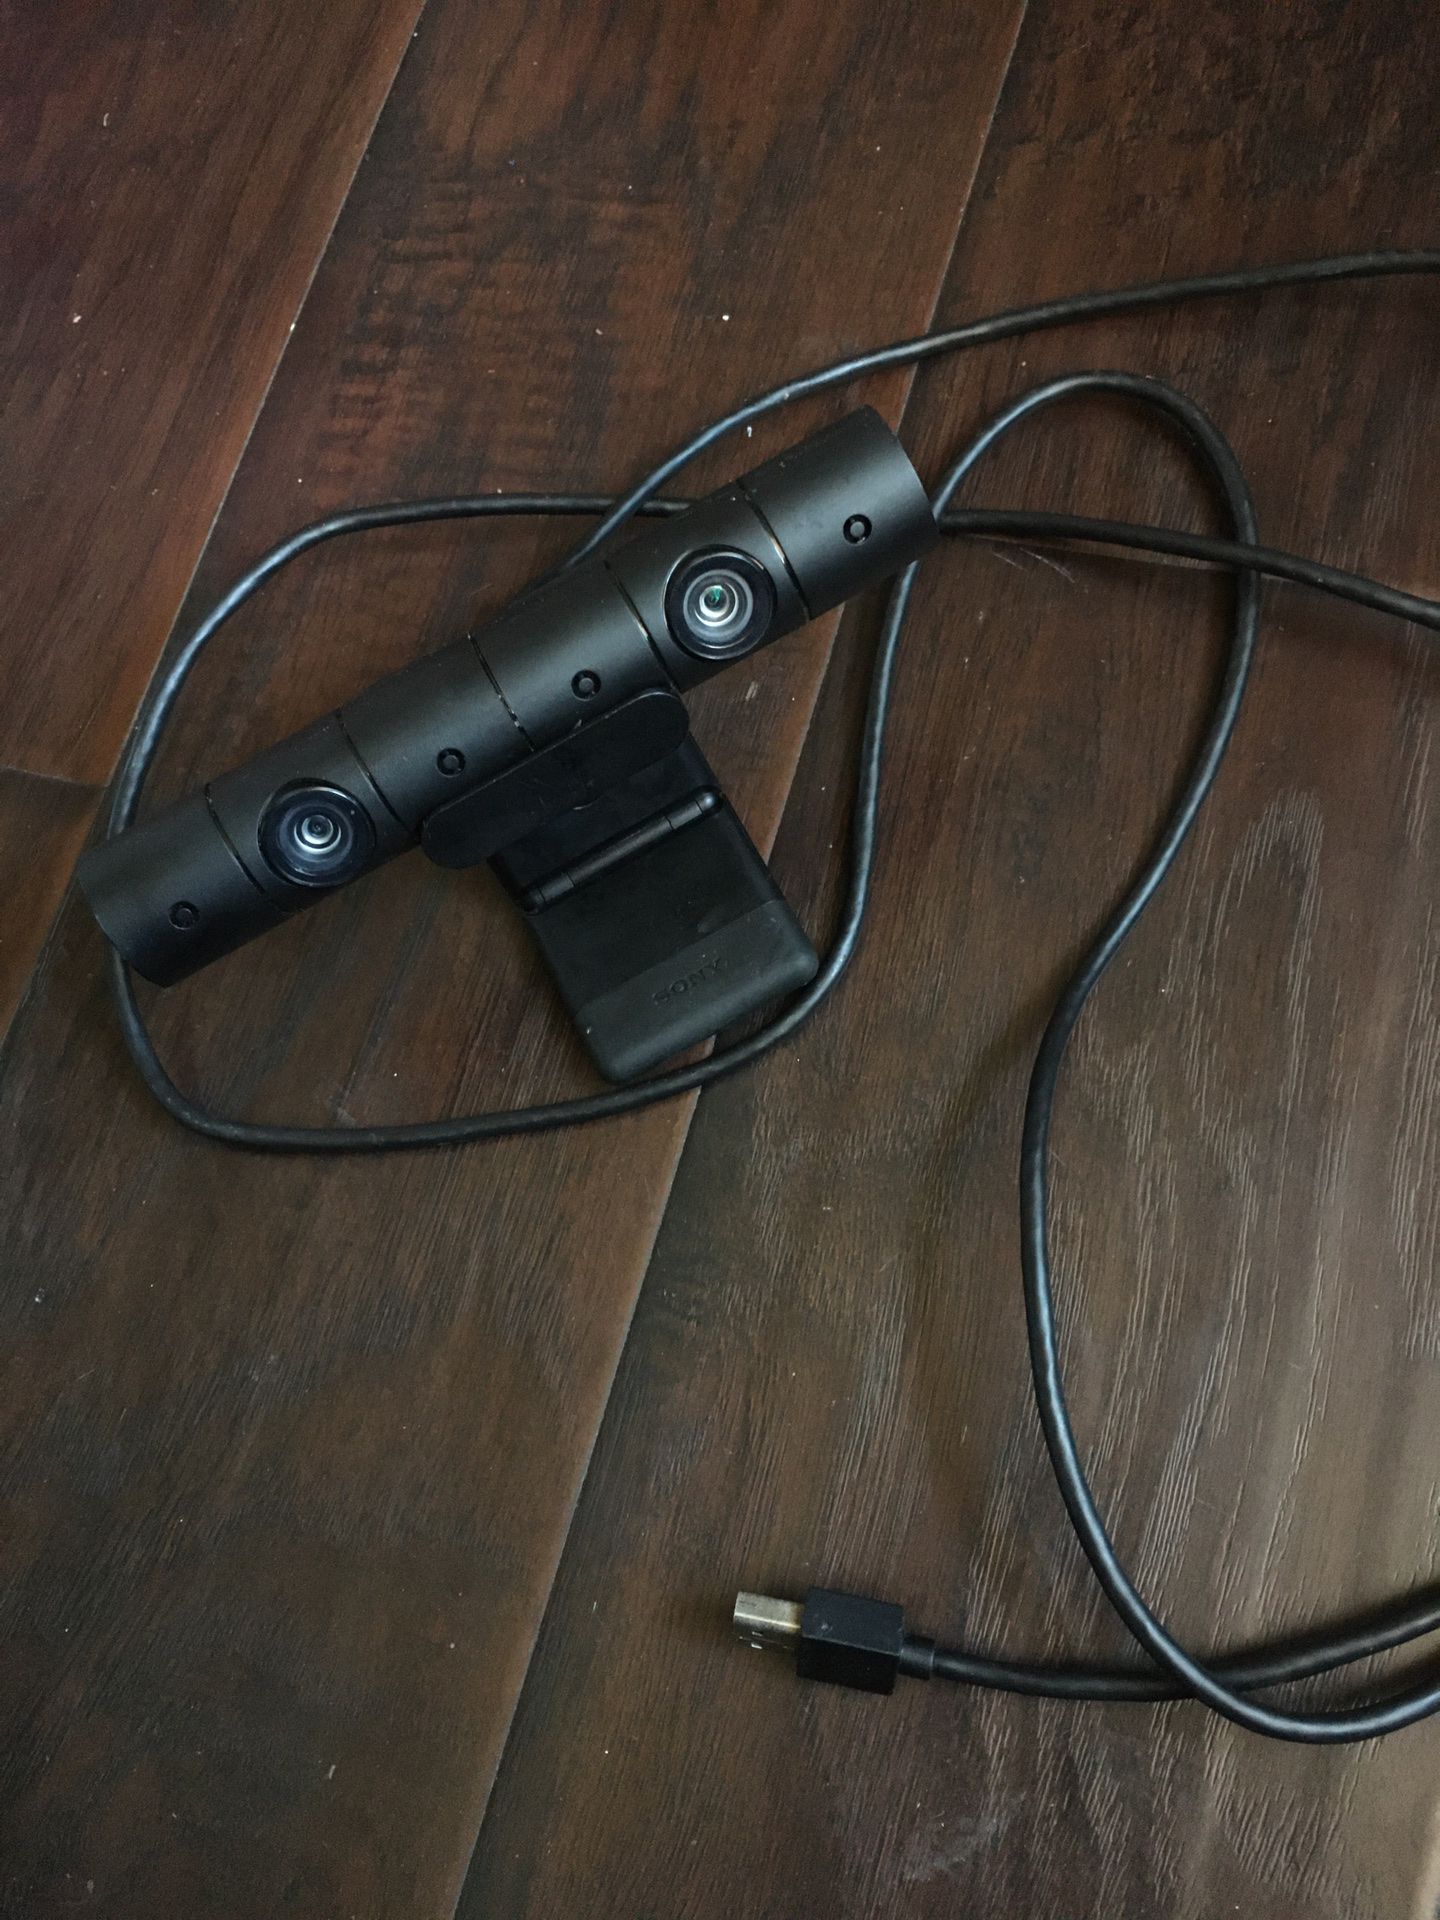 PlayStation 4 camera / mic